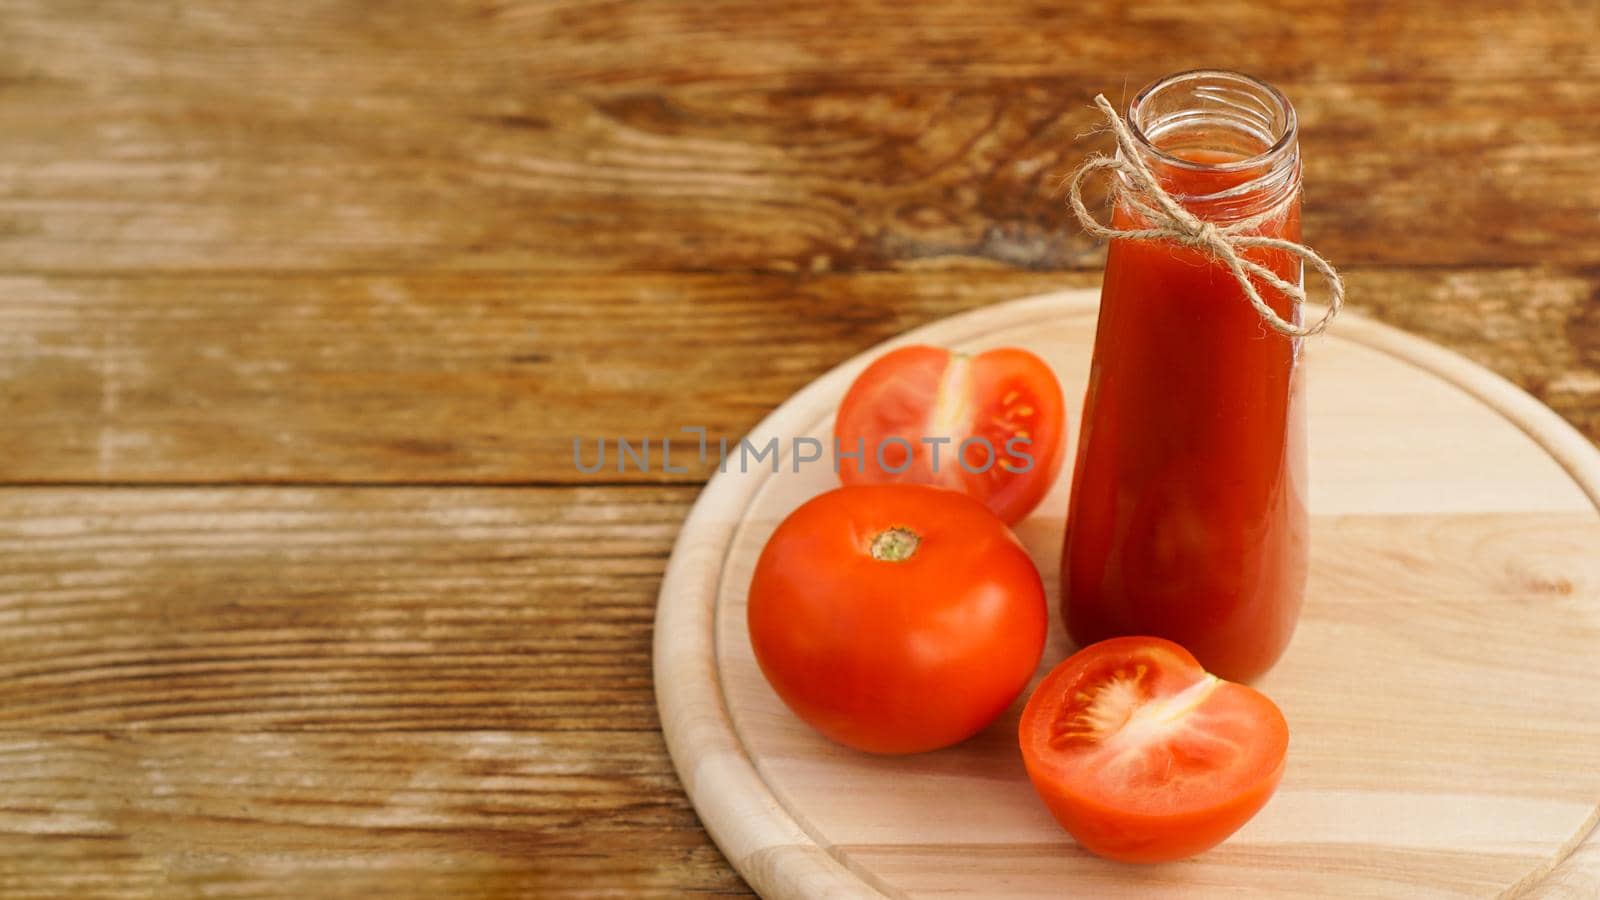 Tomato juice, fresh tomatoes on wooden background - horizontal photo